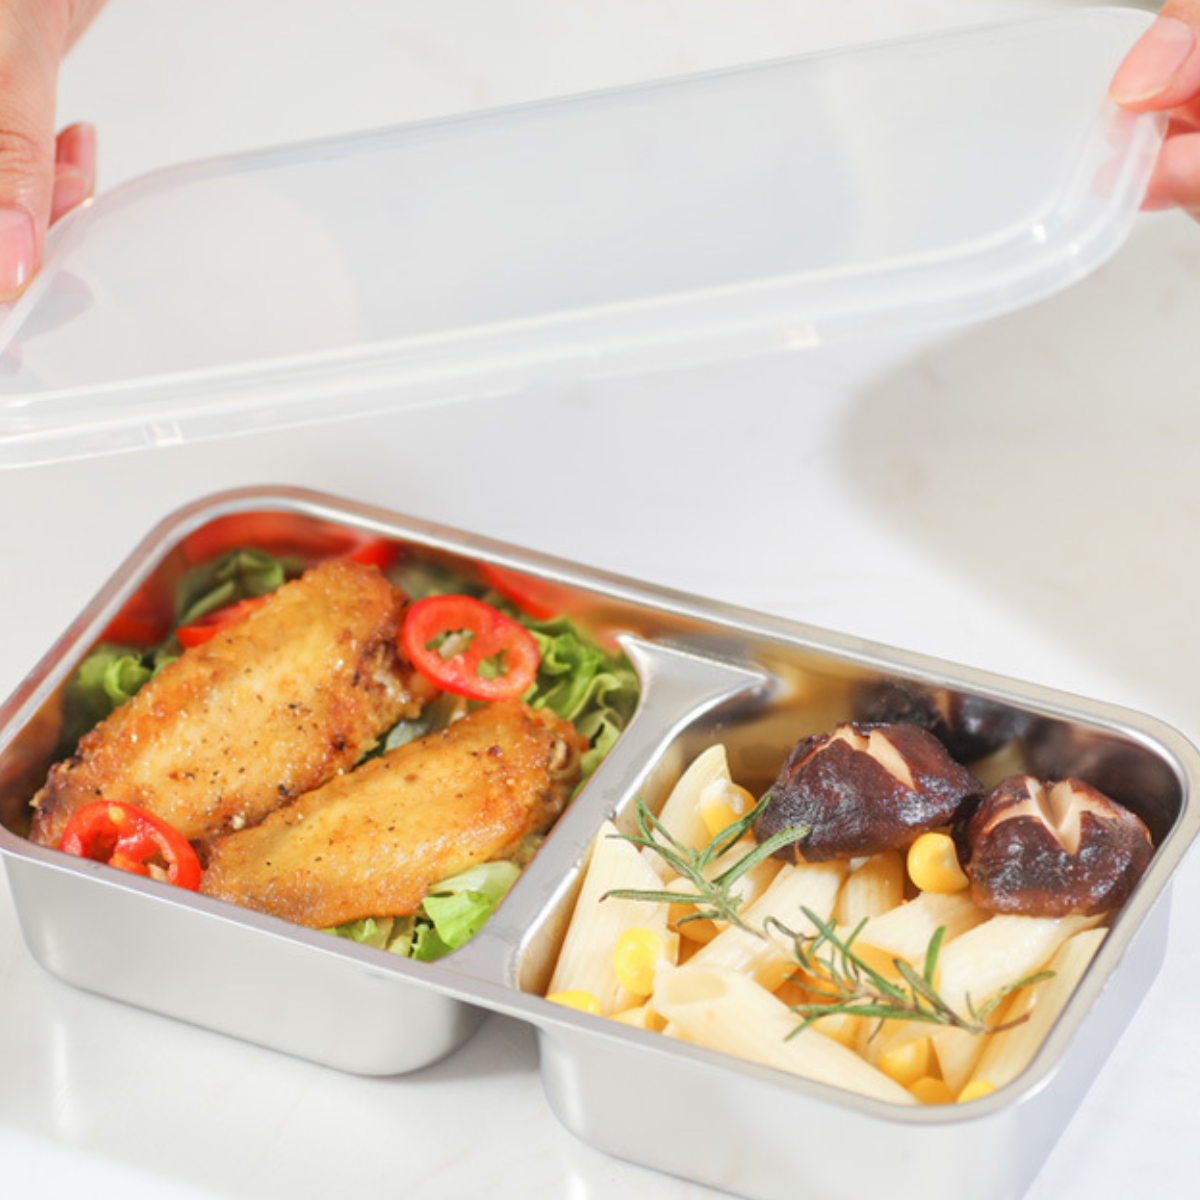 schnelle isolierte zu UWOT dreischichtige Erwärmung, reinigen leicht tragbar&langlebig, 300W Lunchbox: Lunch-Box